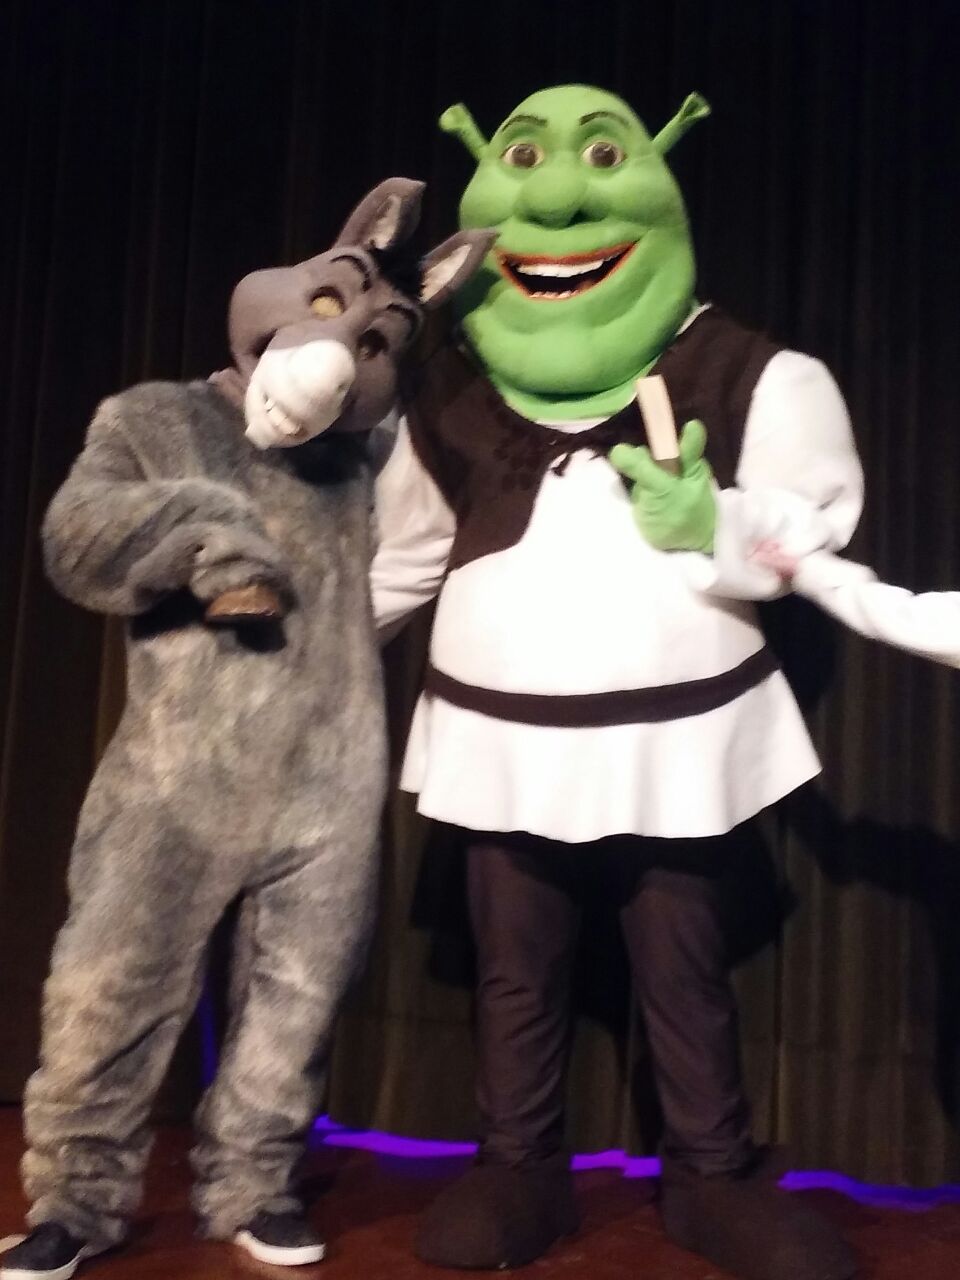 Disfraz Shrek y burro en representacion teatral "Grupo bajo del mar"